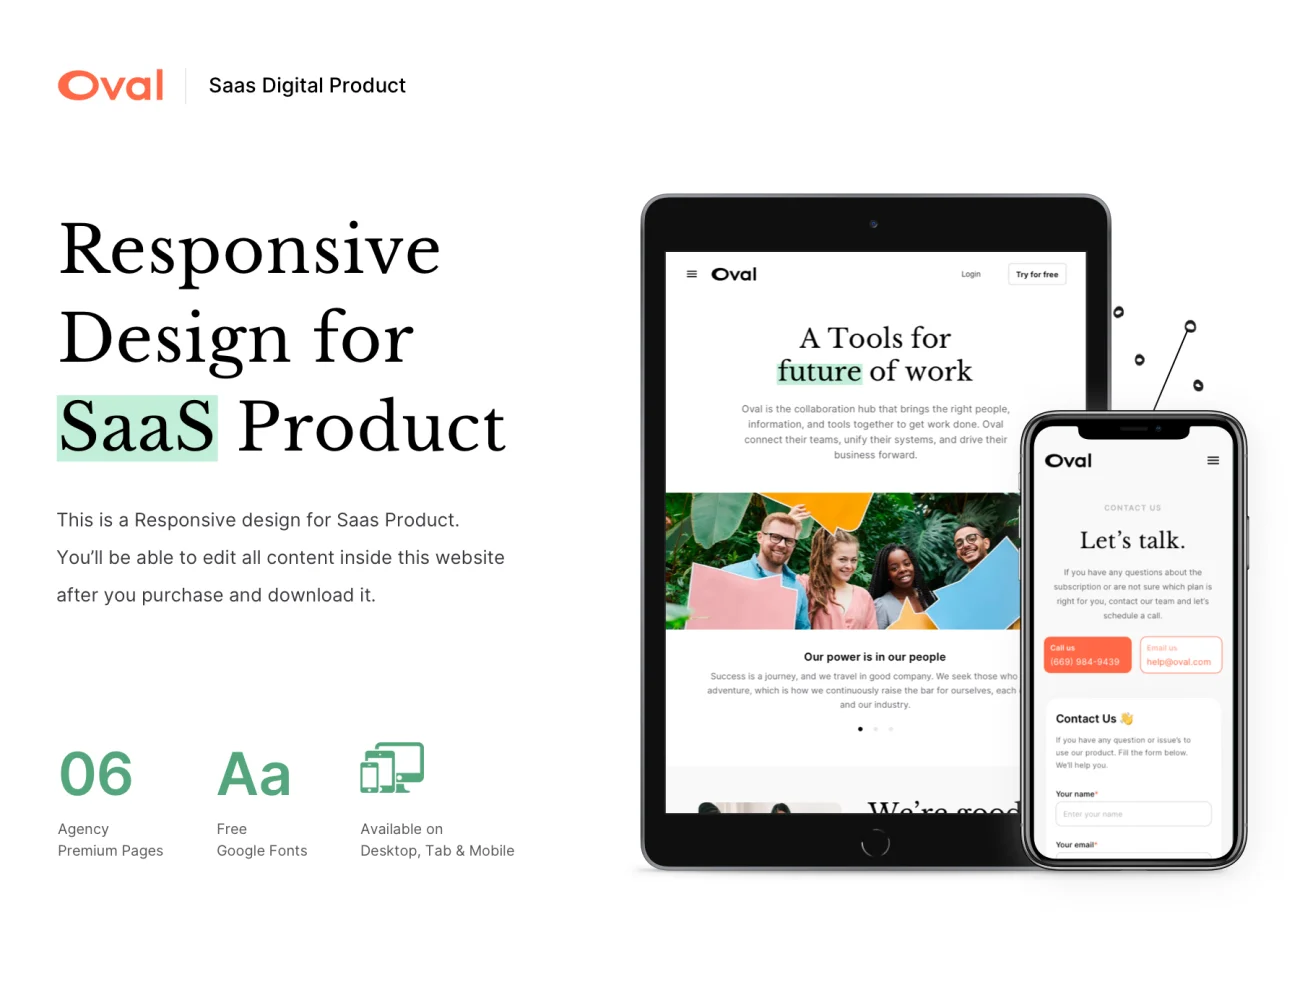 6款SaaS平台网站优质登陆页面设计模板 Oval SaaS Platform Website Design vol. 2插图3